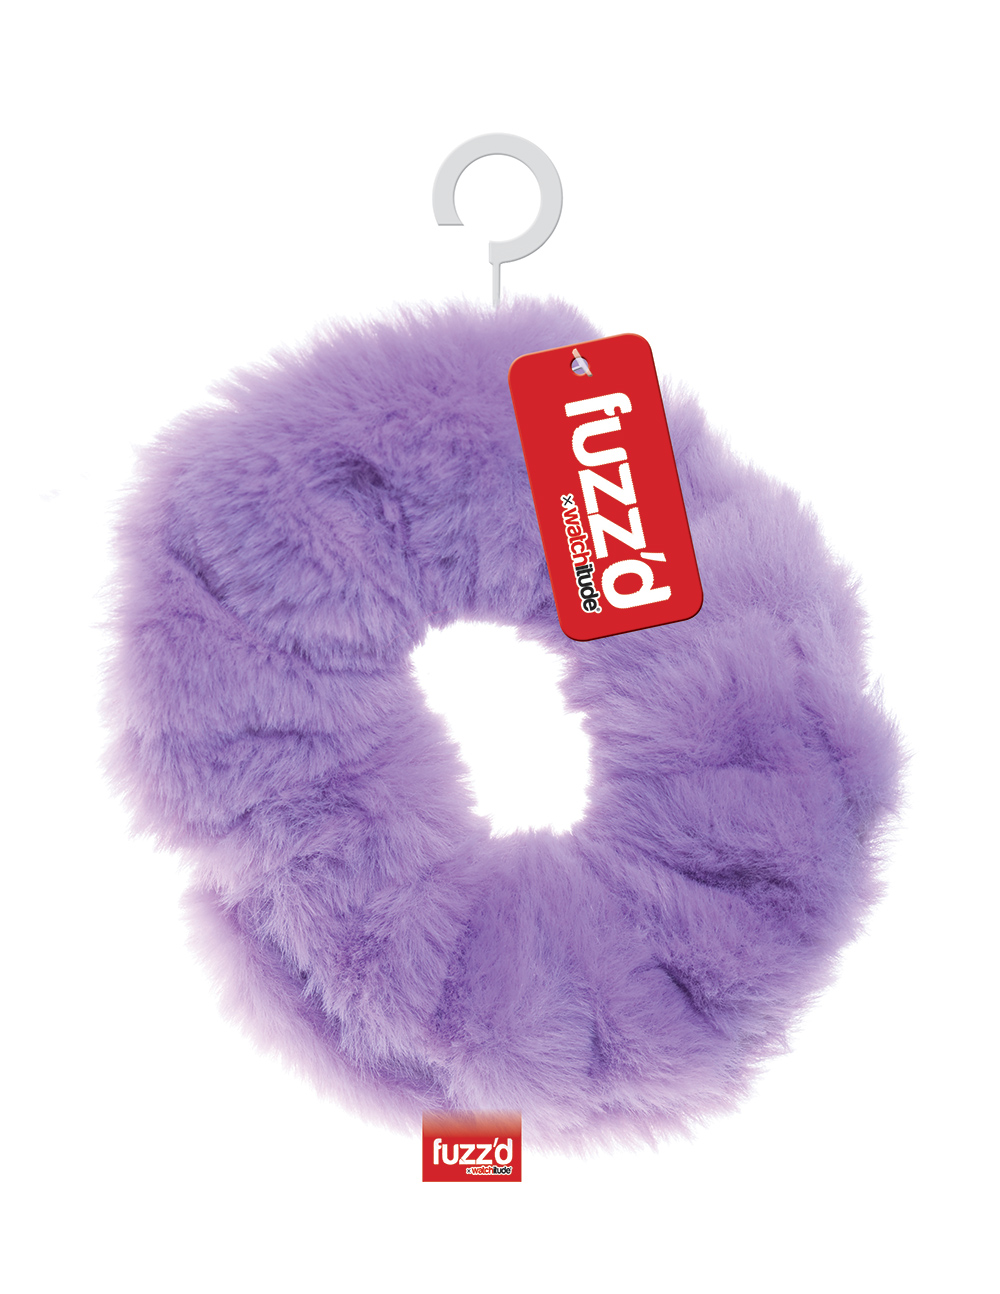 Lavender Donut - Hair Tie - Fuzz'd x Watchitude